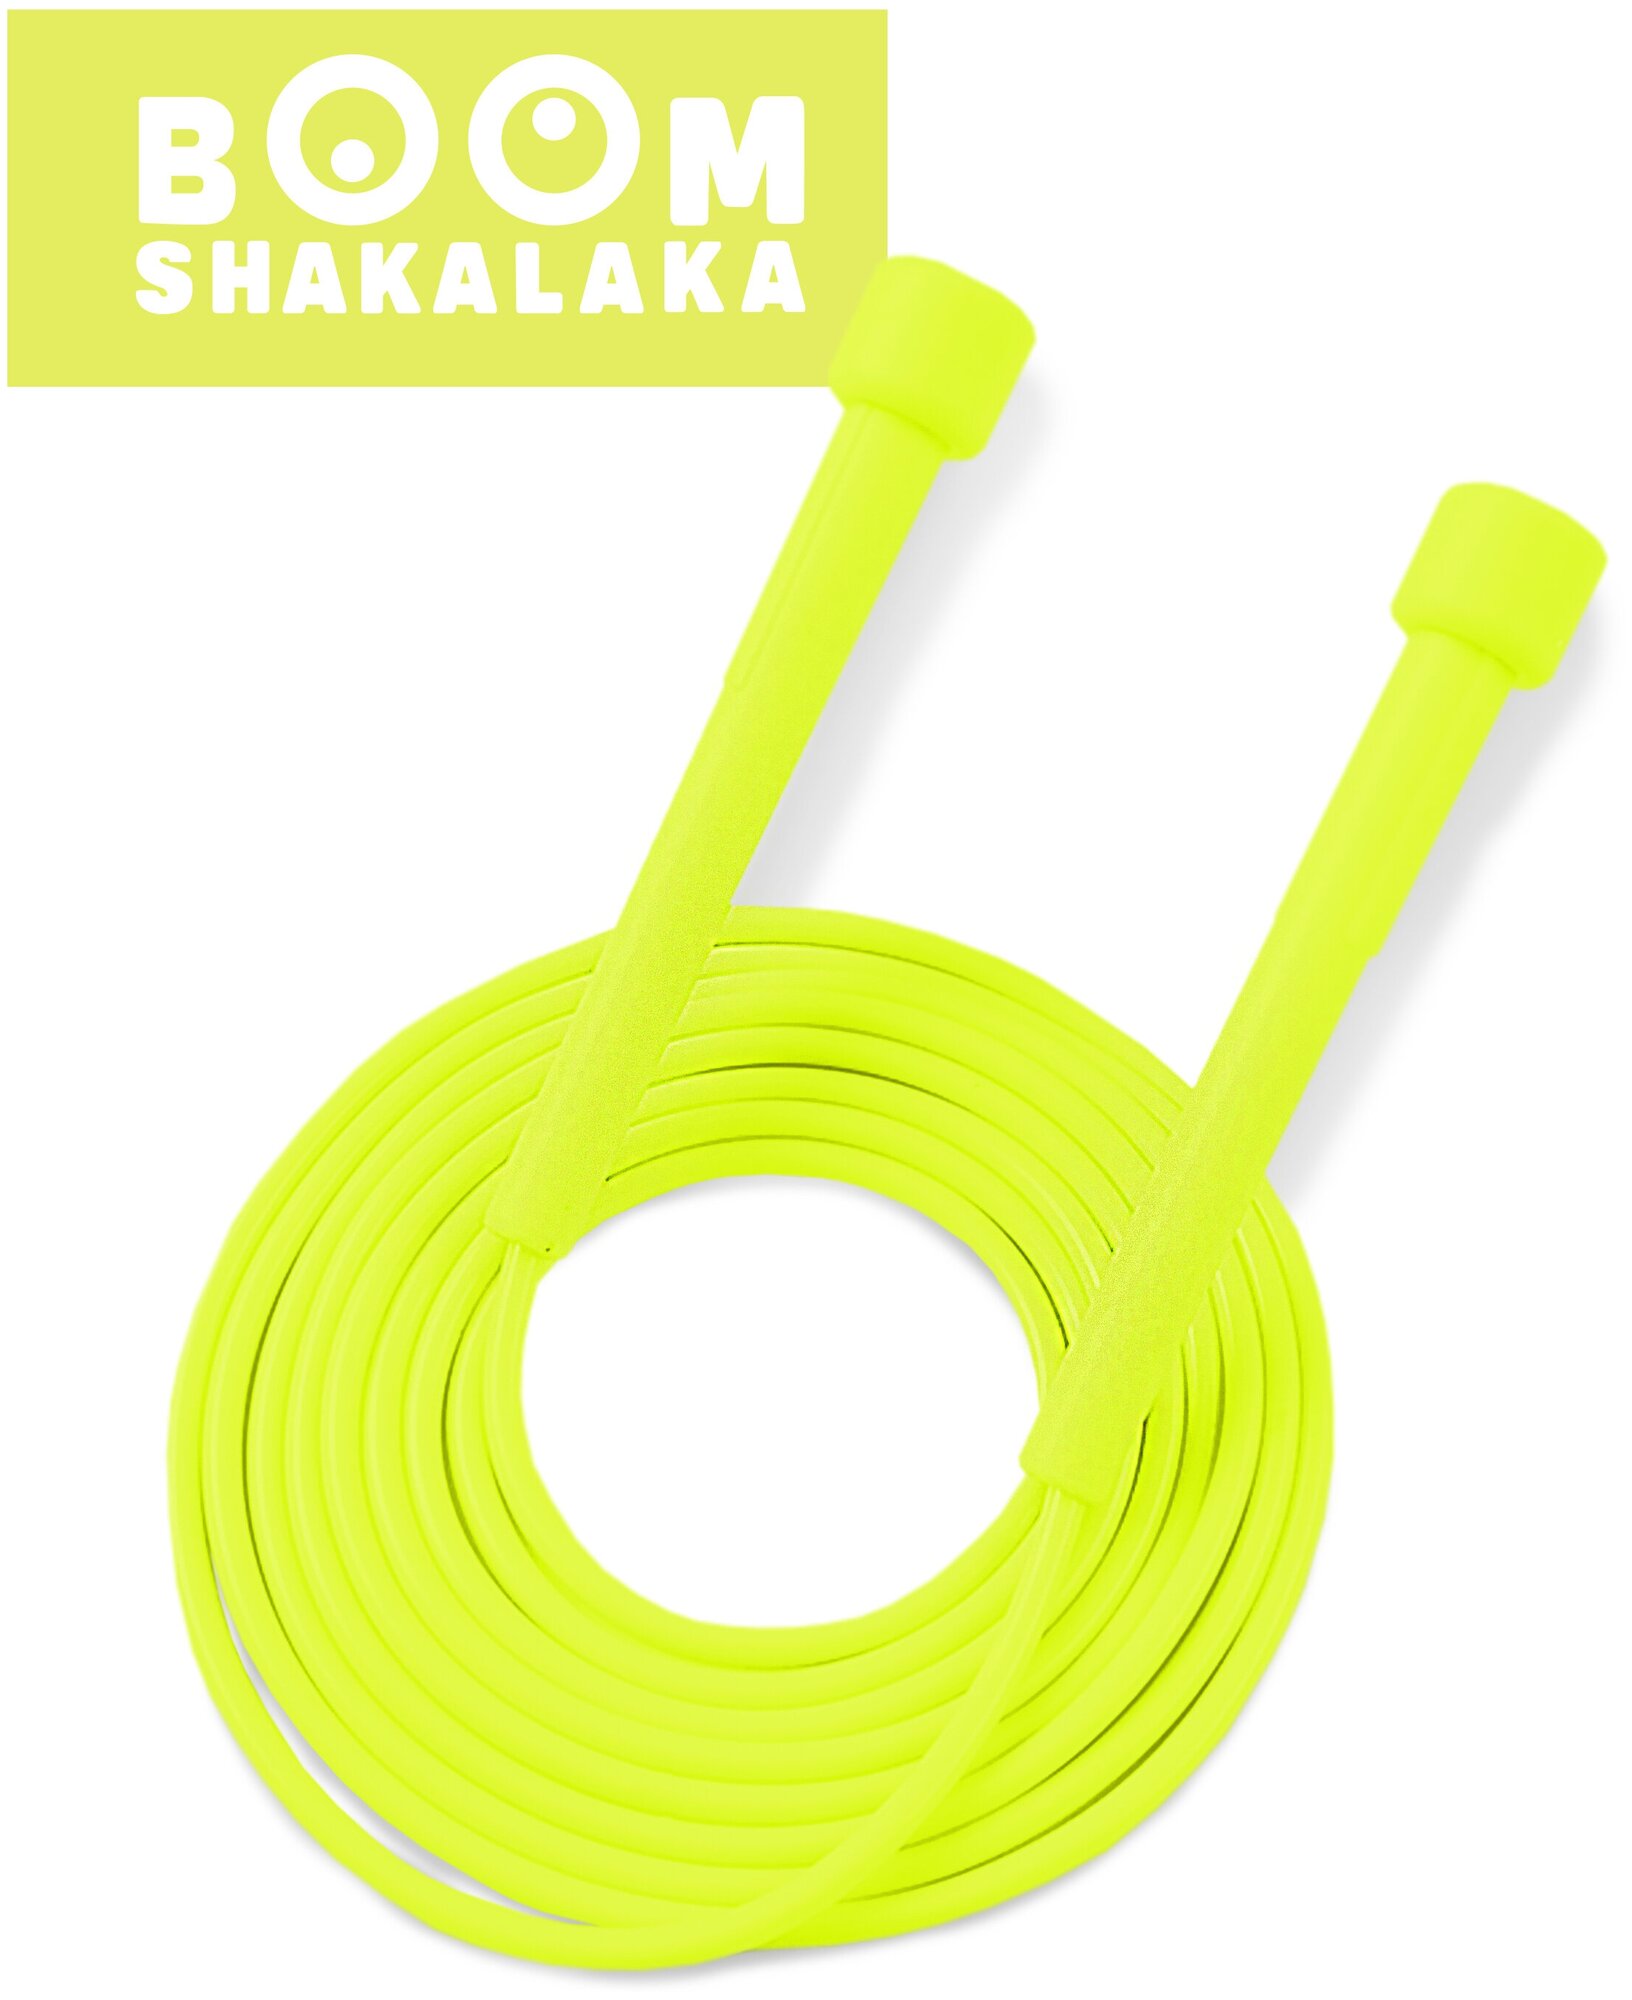 Скакалка скоростная Boomshakalaka, шнур 2.8м, жёлто-зеленая, с регулировкой, прыгалка для взрослых и детей, для кроссфита, фитнеса, бокса, гимнастики